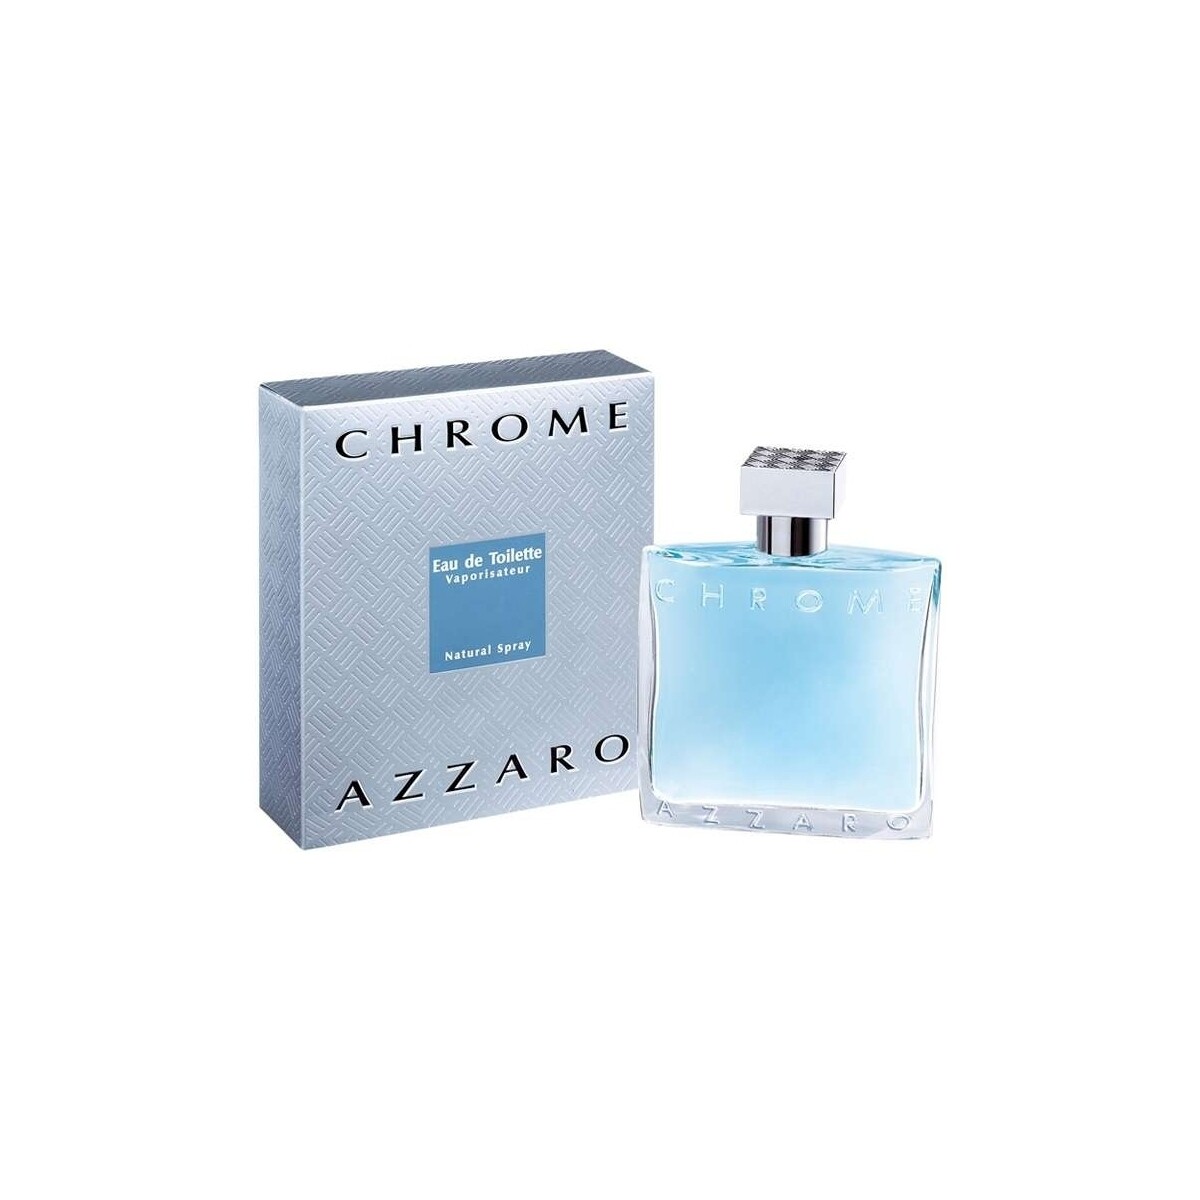 Azzaro Chrome - cologne - 200ml - spray Chrome - eau de toilette - 200ml - vaporisateur 4CcagqgJ